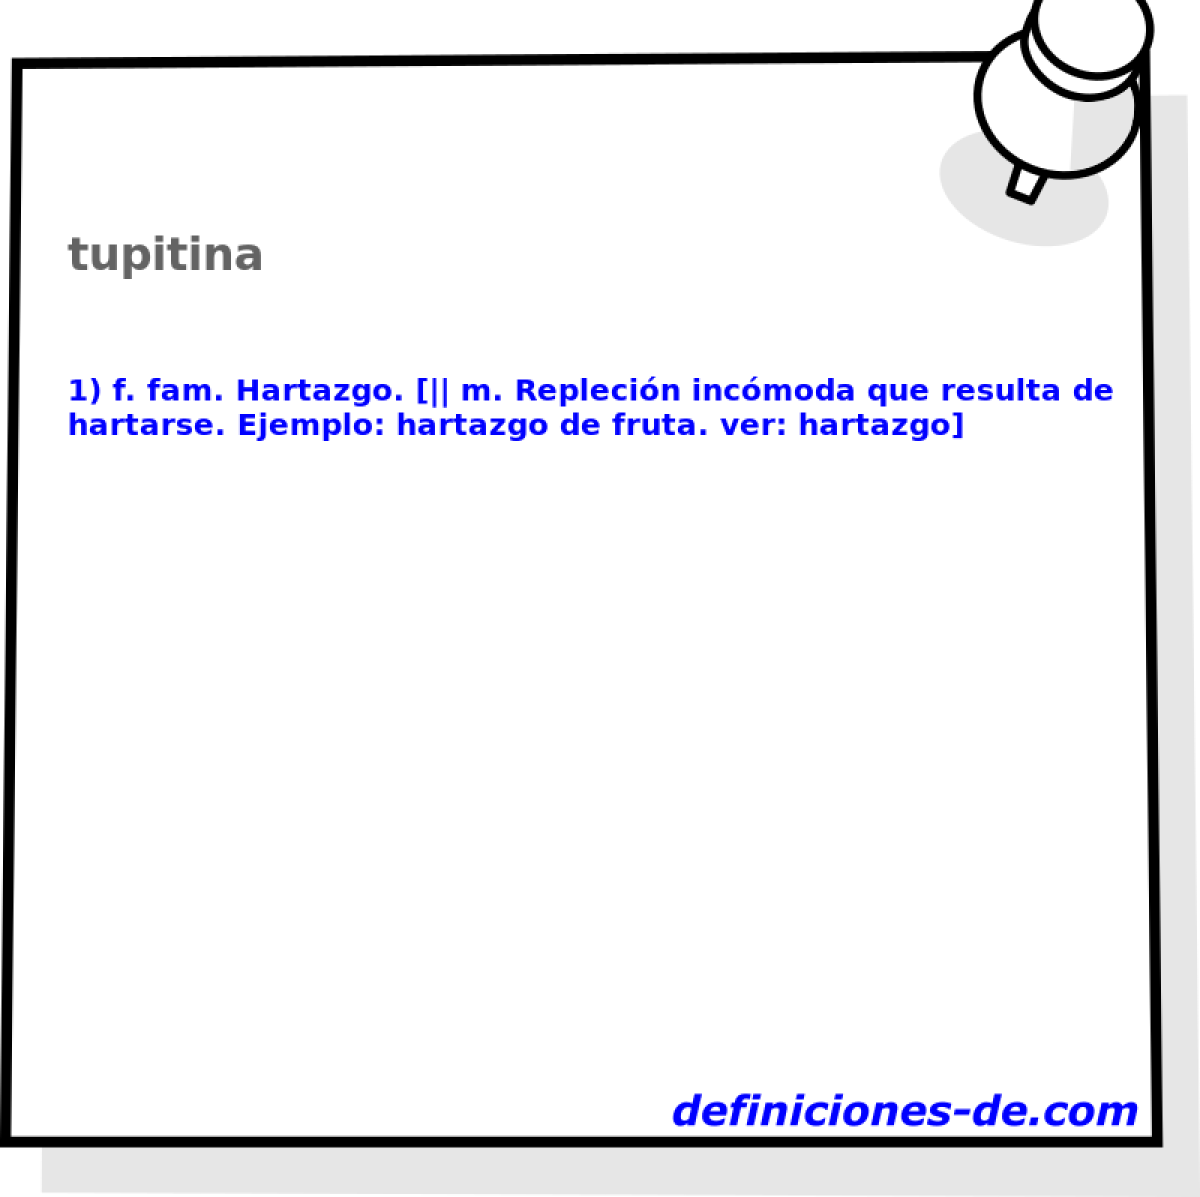 tupitina 